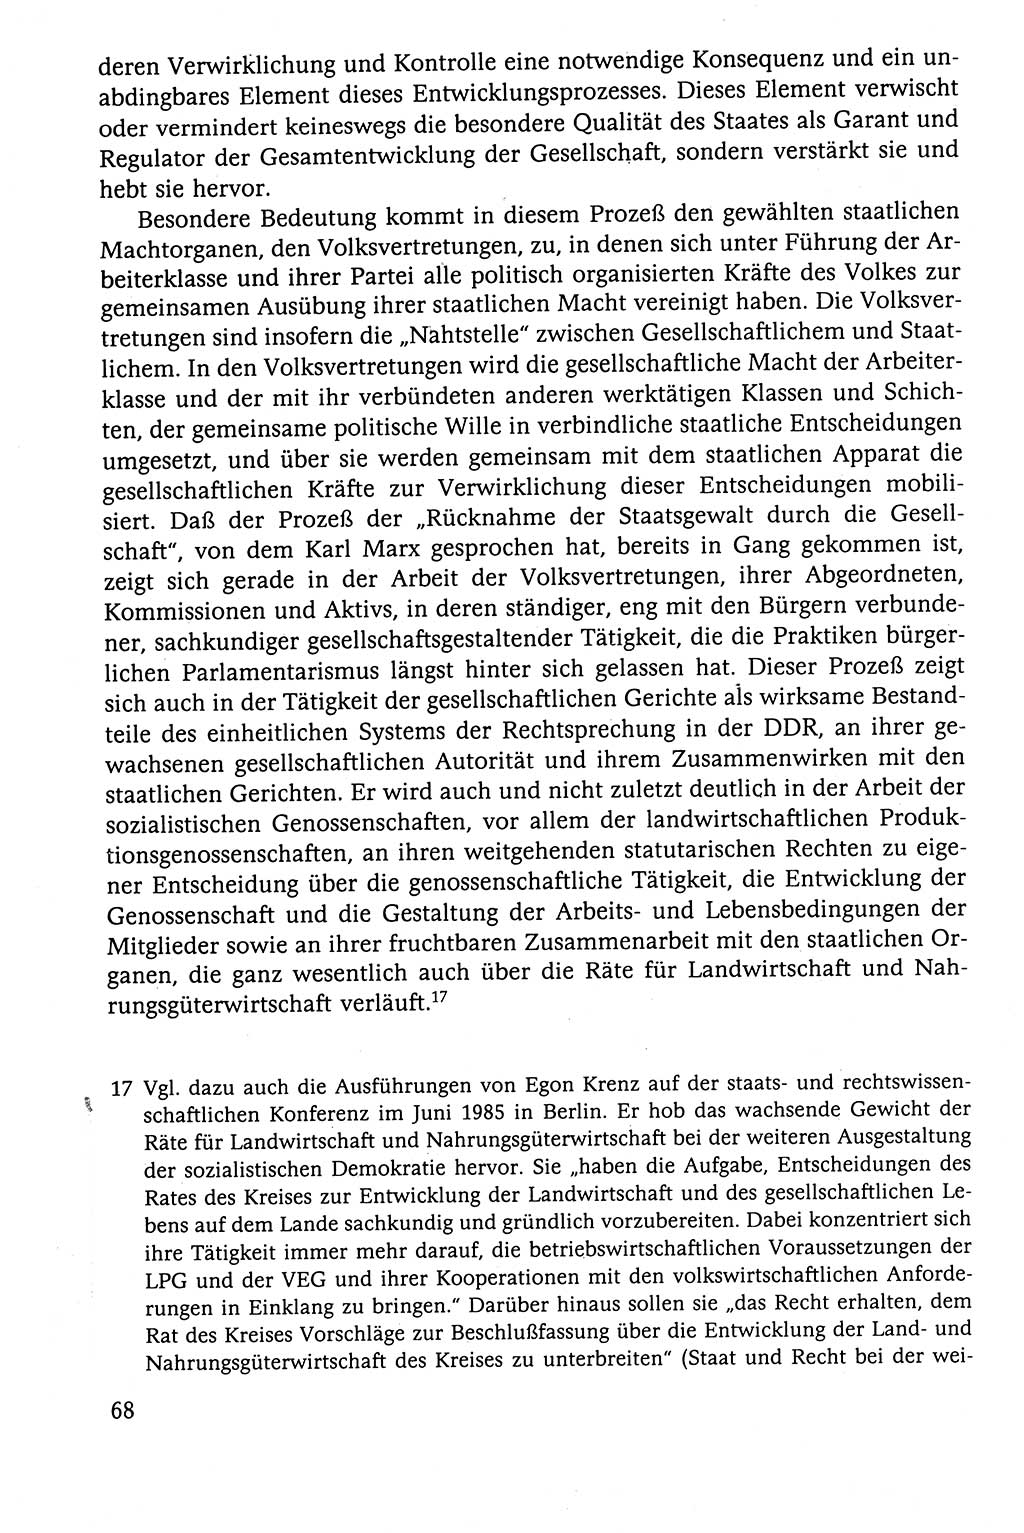 Der Staat im politischen System der DDR (Deutsche Demokratische Republik) 1986, Seite 68 (St. pol. Sys. DDR 1986, S. 68)